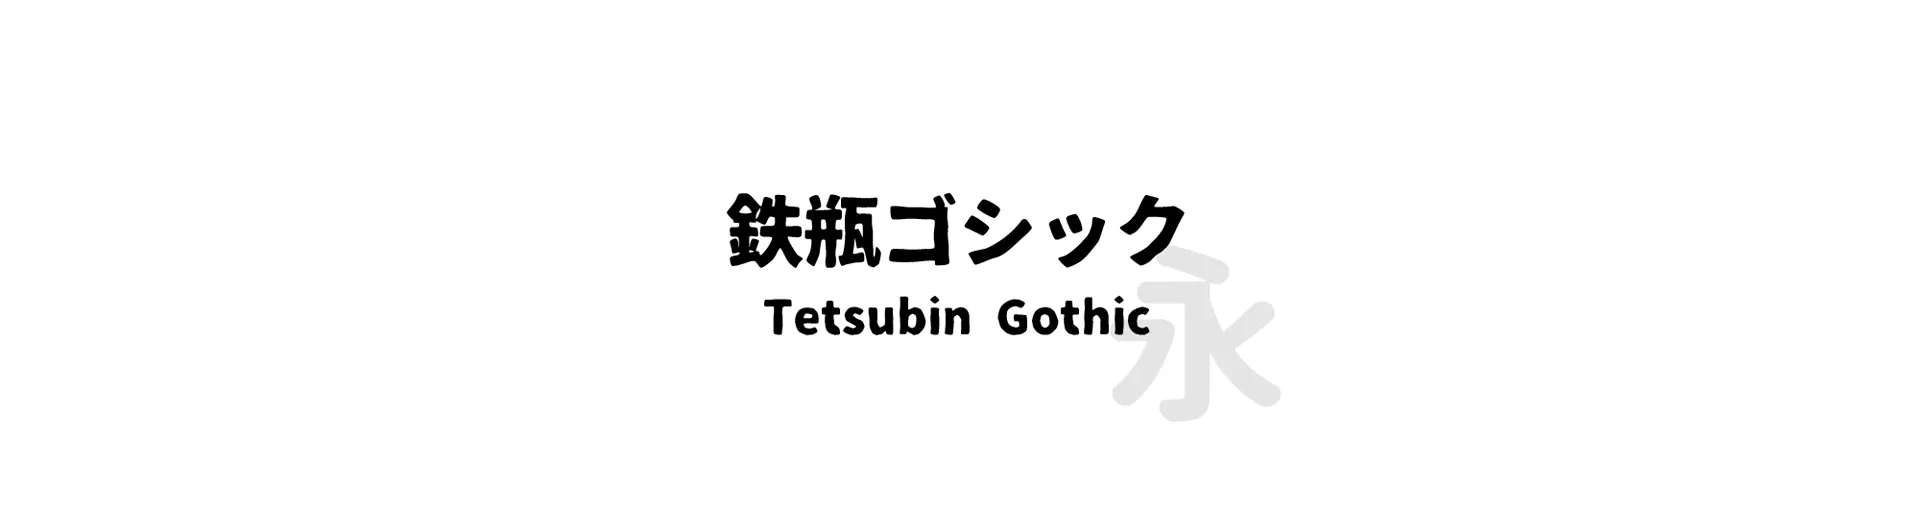 Tetsubin Gothic